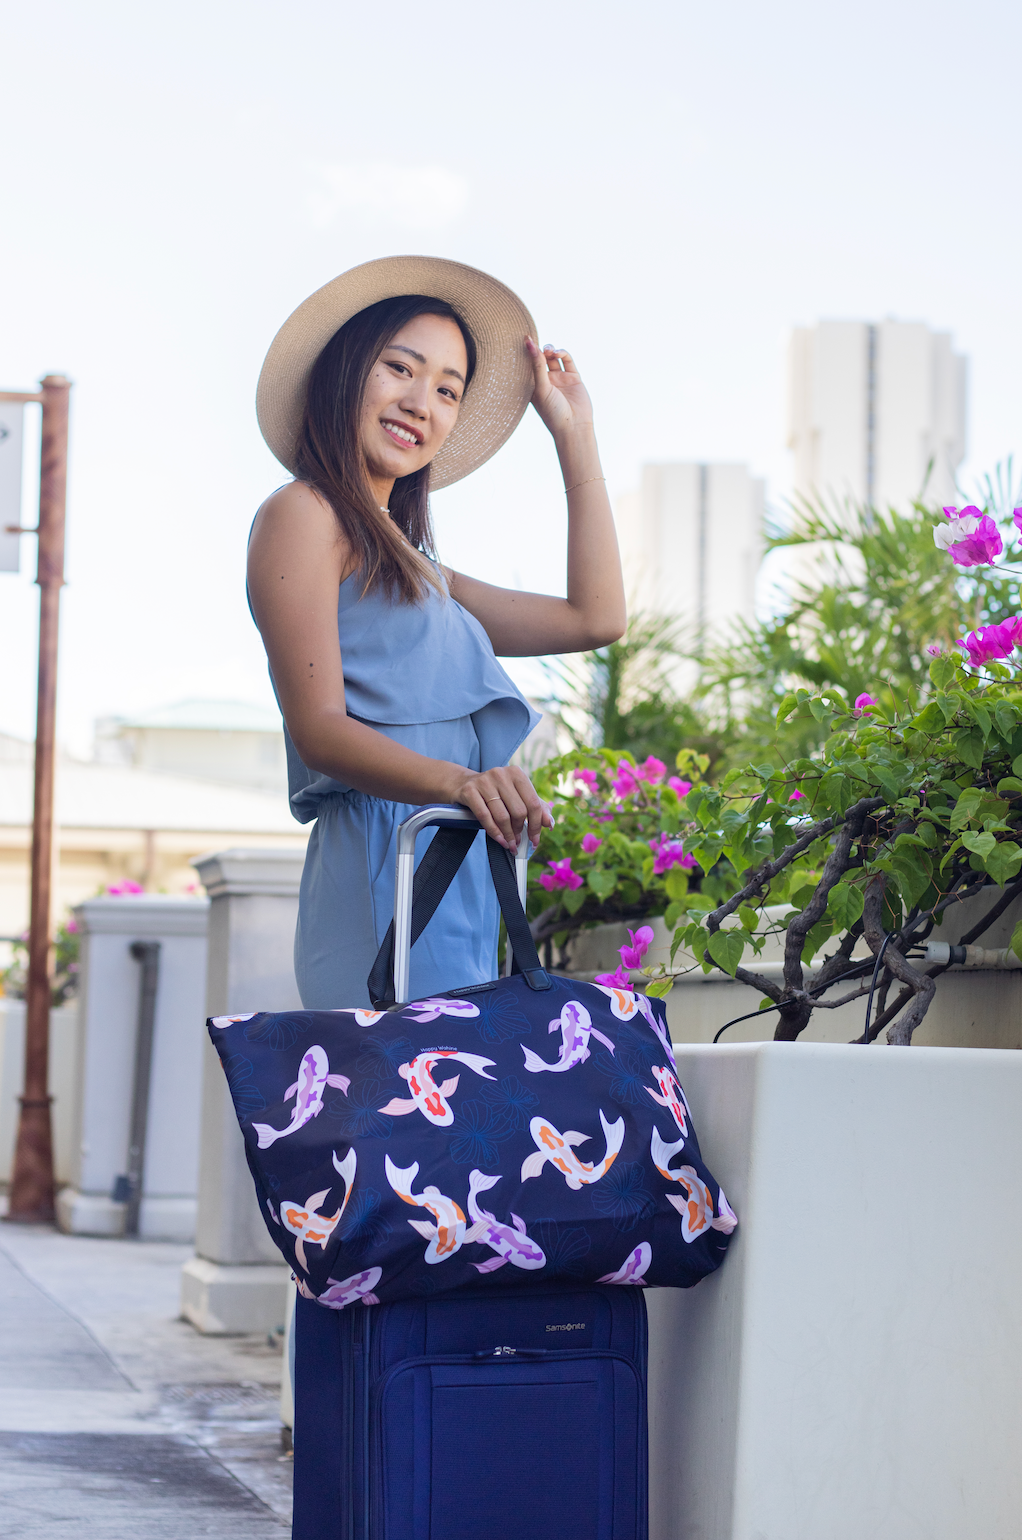 Hua Ho SYMB - Happiness isshopping for handbag!👜 New